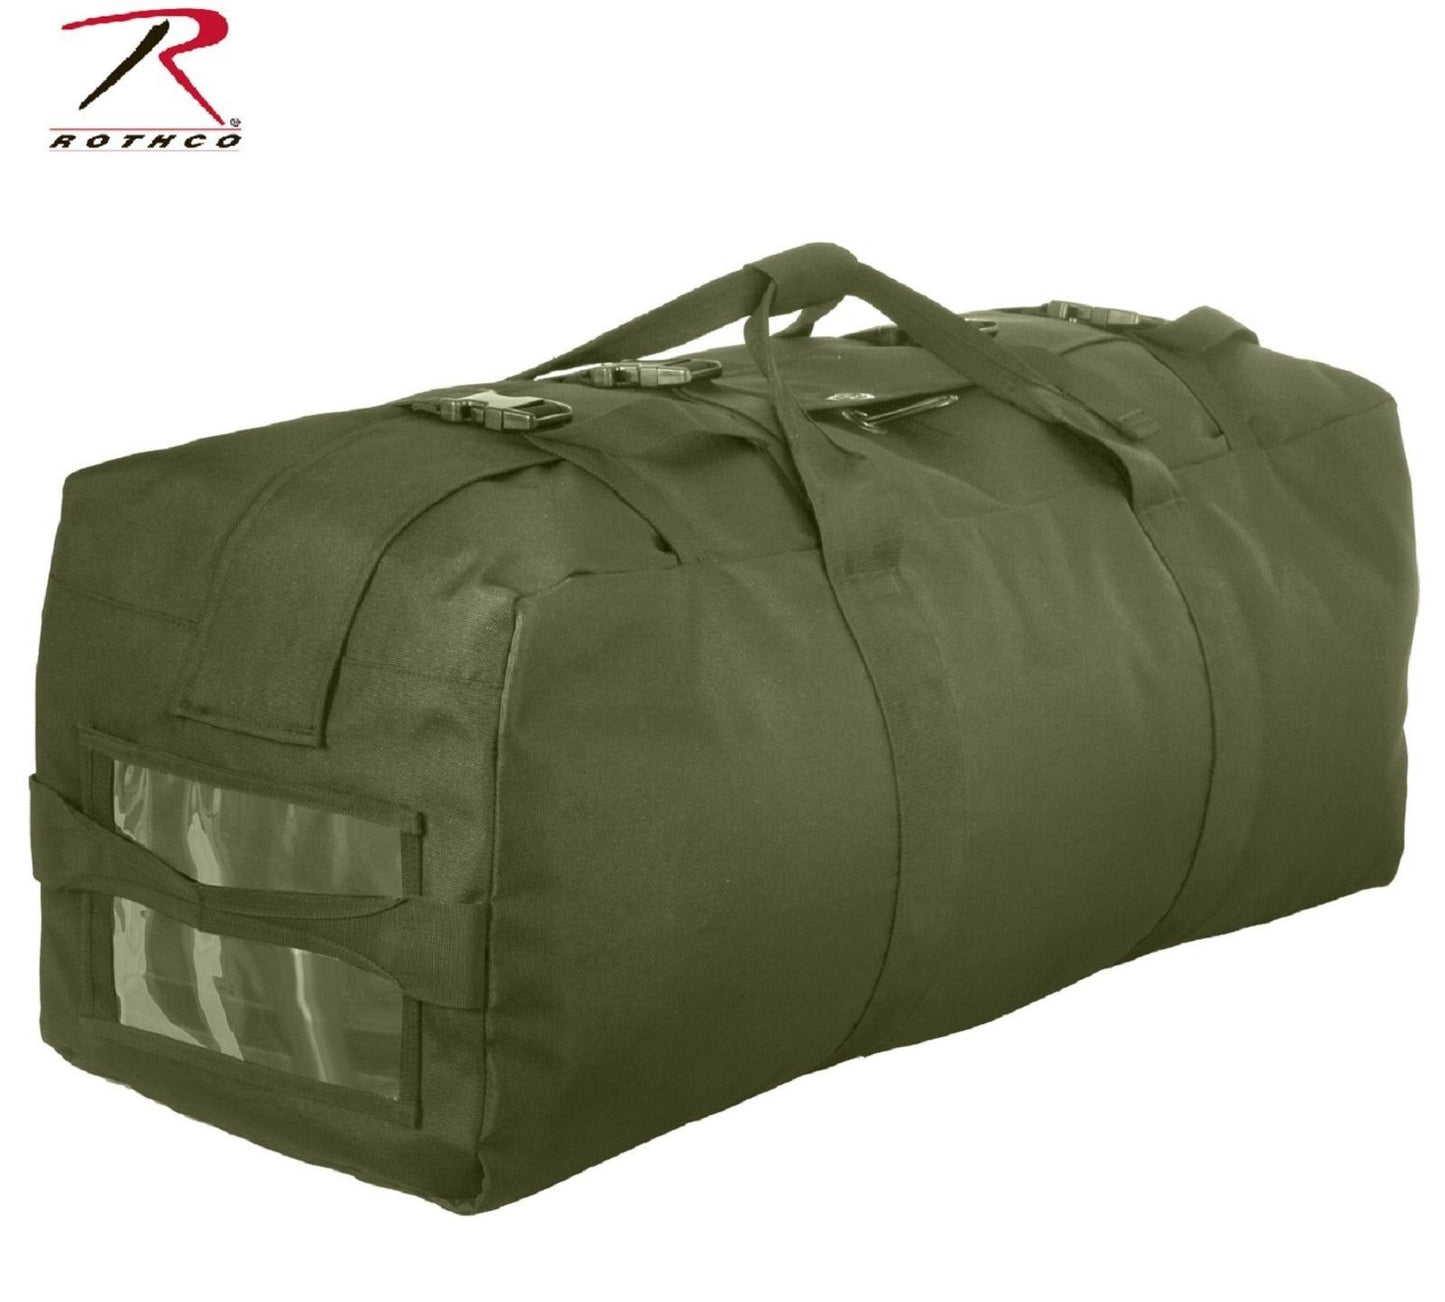 Large 32" Enhanced Nylon Duffle Bag - Rothco Olive Drab Green GI Type Gear Bag